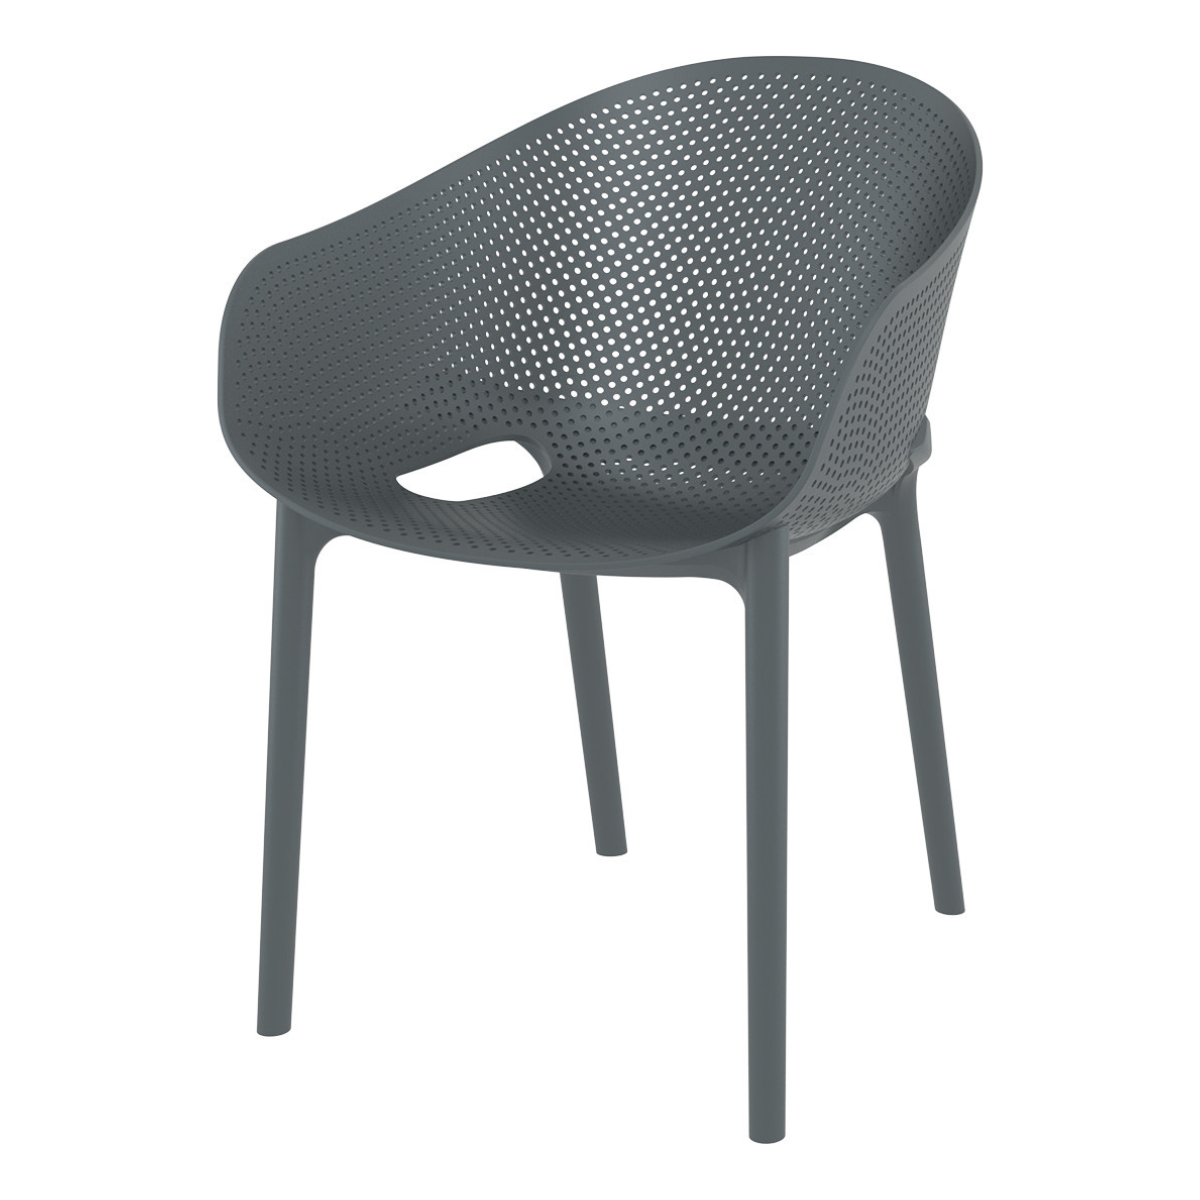 ST SKY PRO Szürke design Műanyag kültéri szék